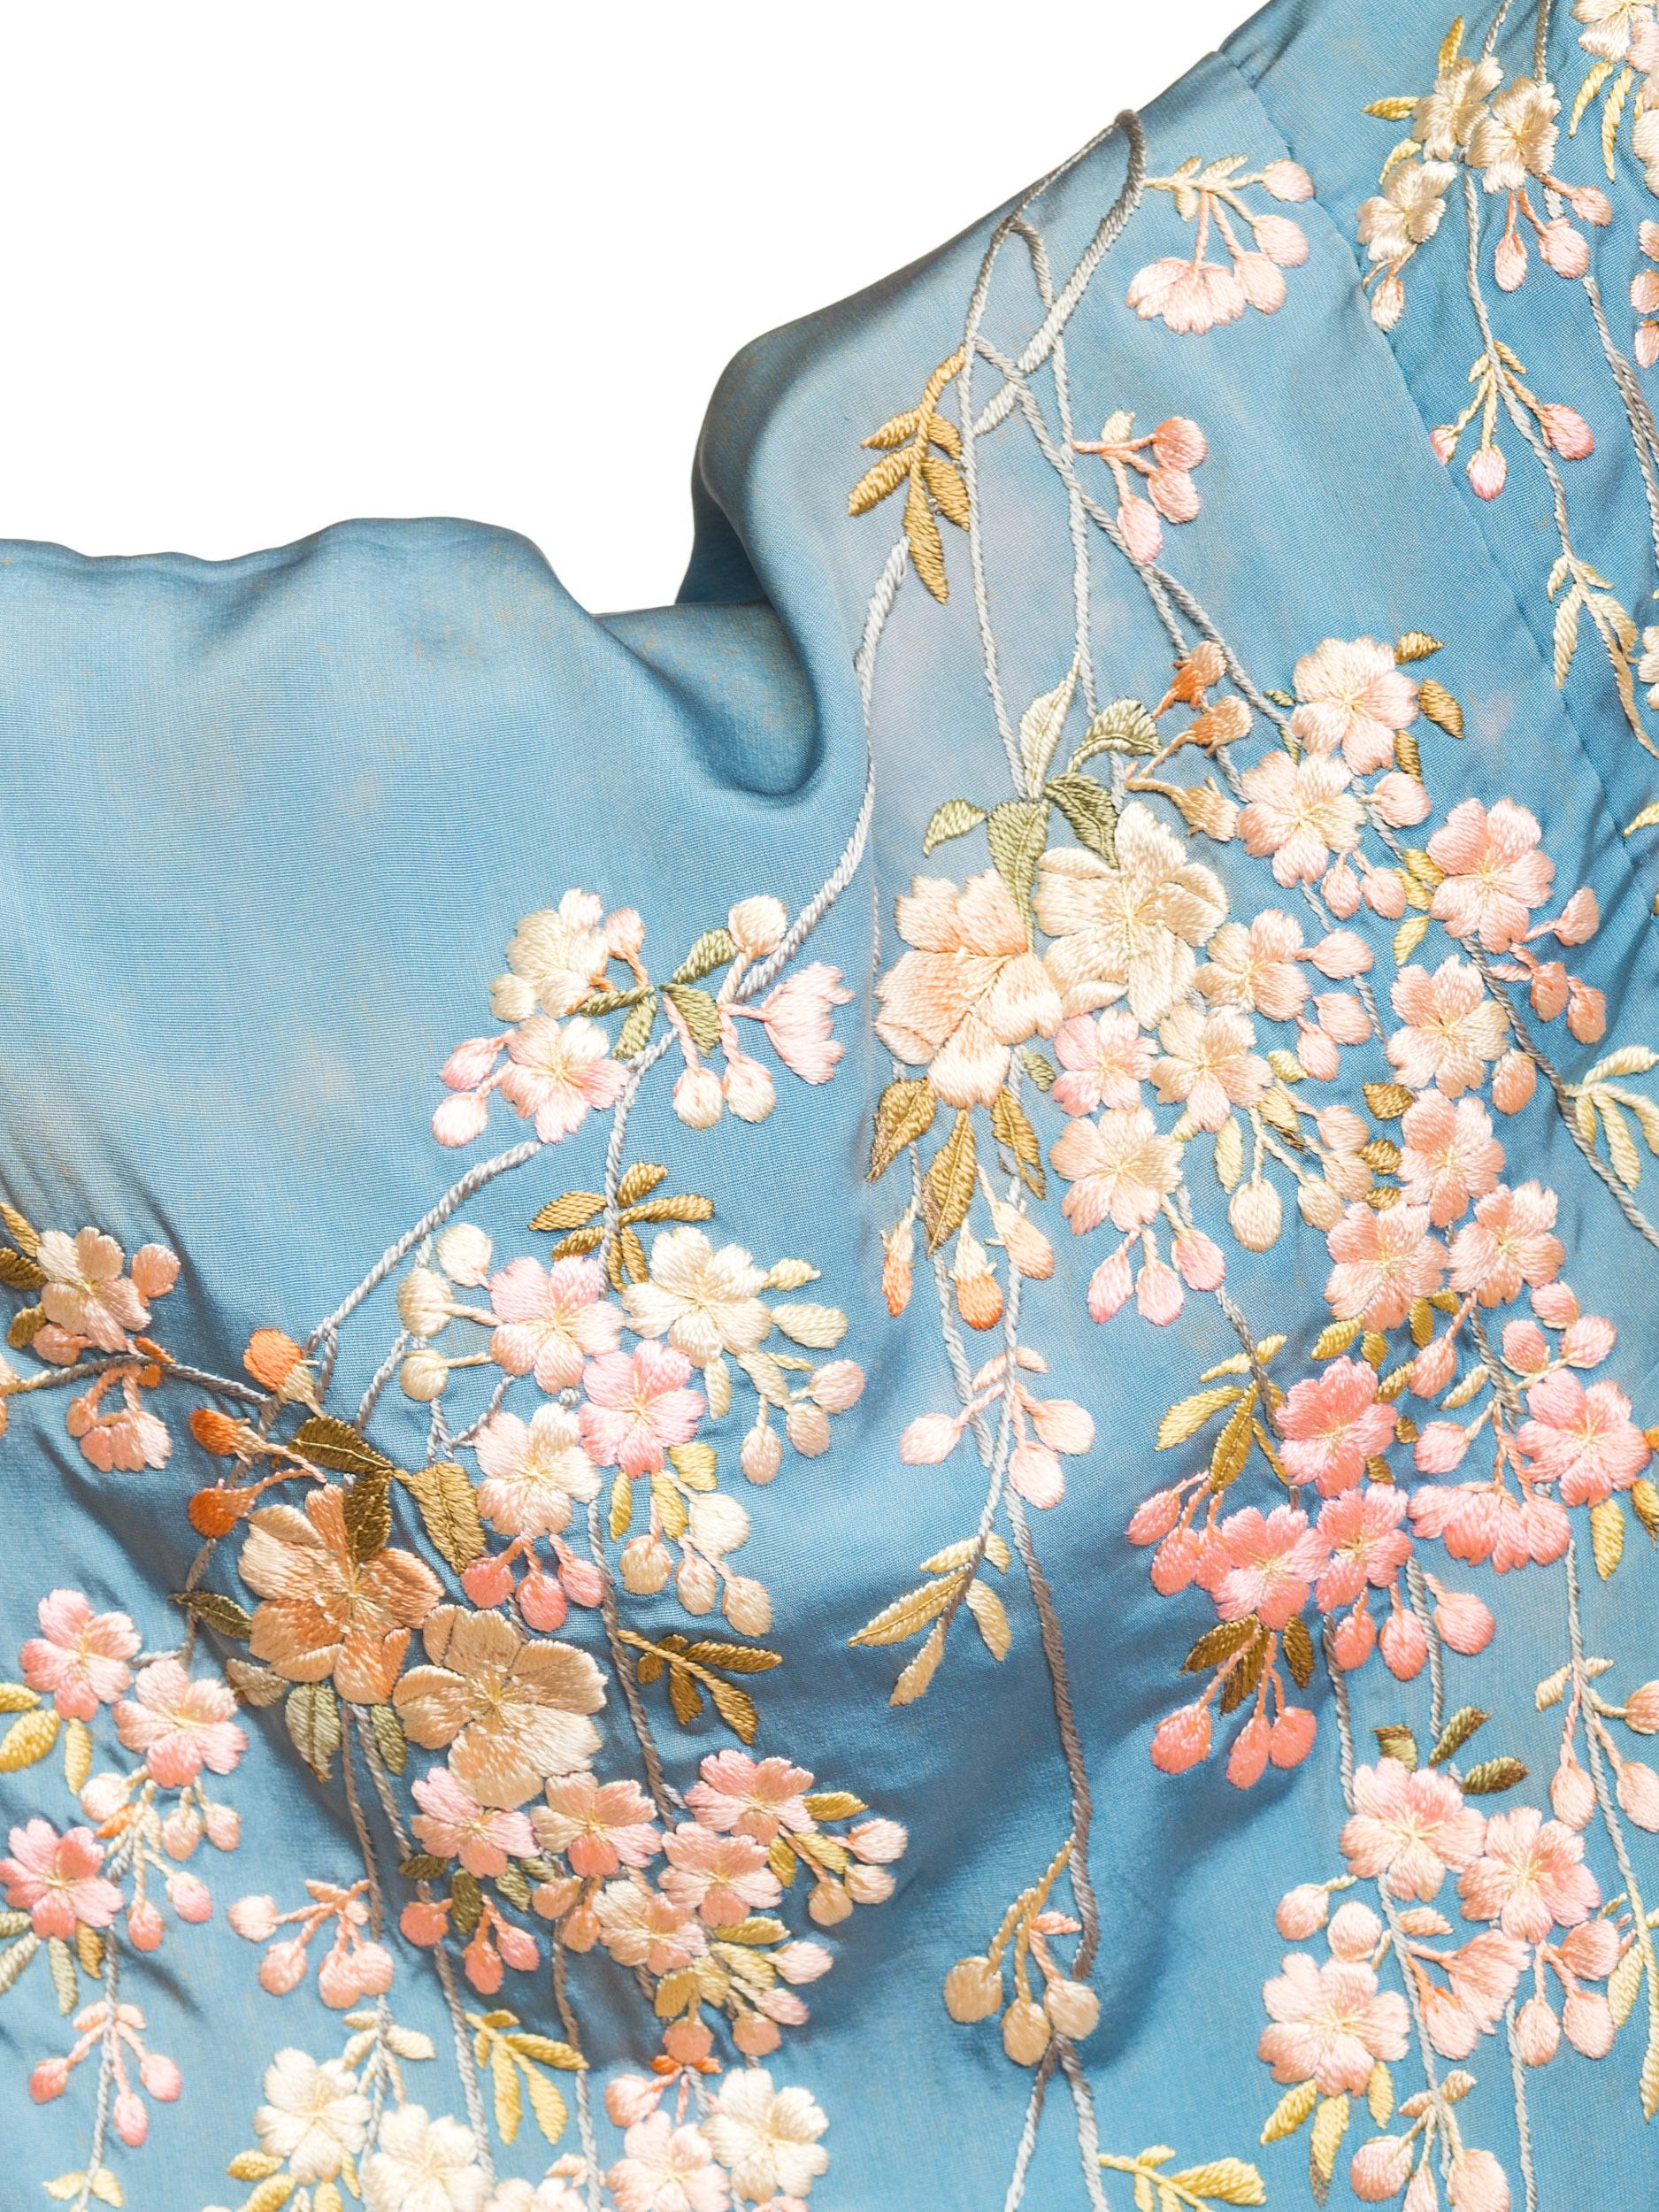 Women's Antique Edwardian Floral Embroidered Japanese Kimono